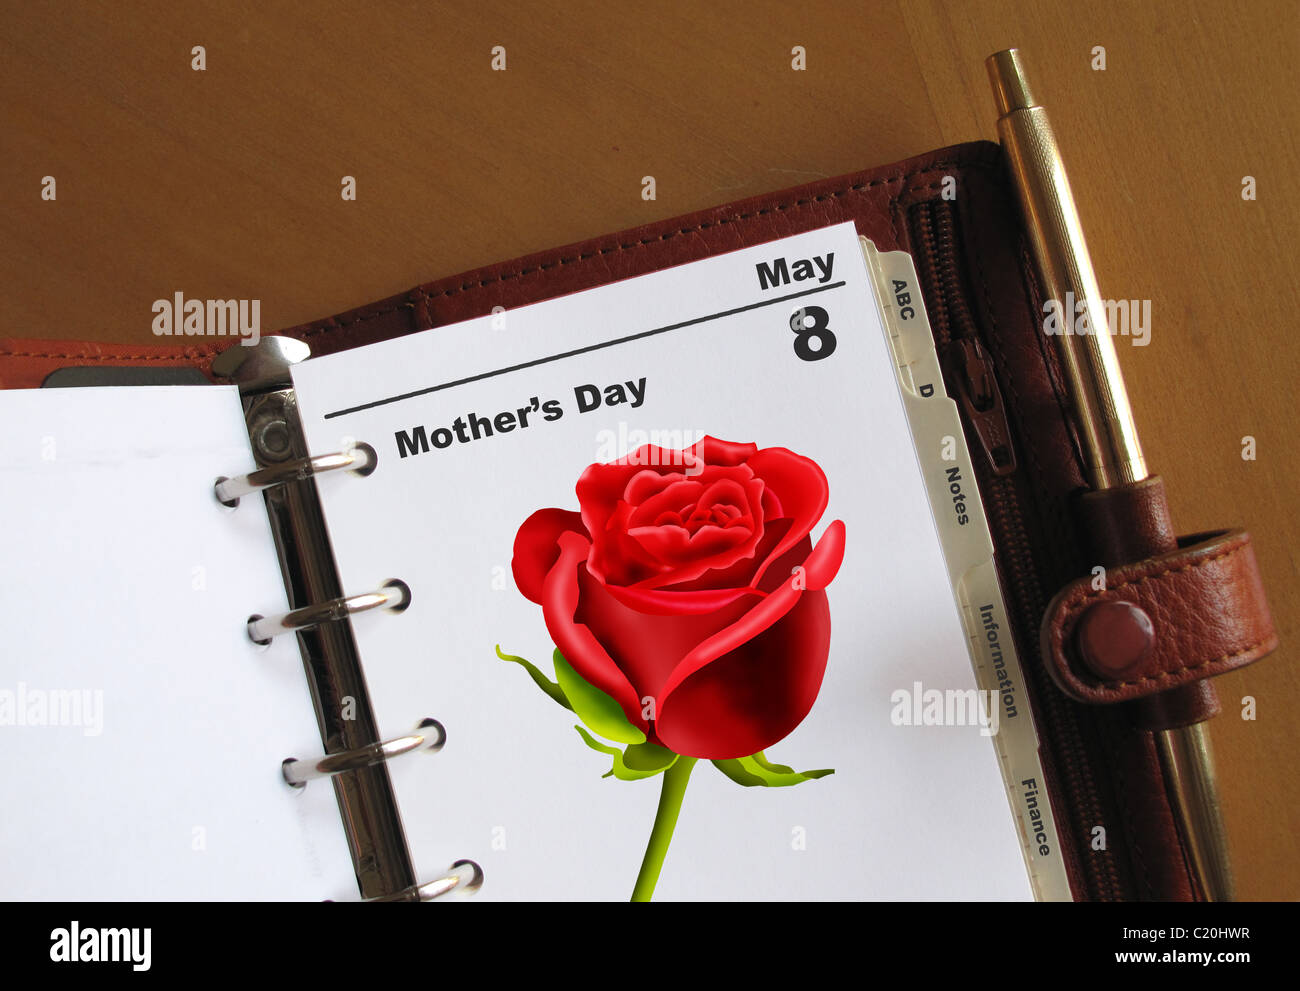 La fête des Mères le 8 mai date d'agenda dans un organiseur personnel avec une rose rouge Banque D'Images